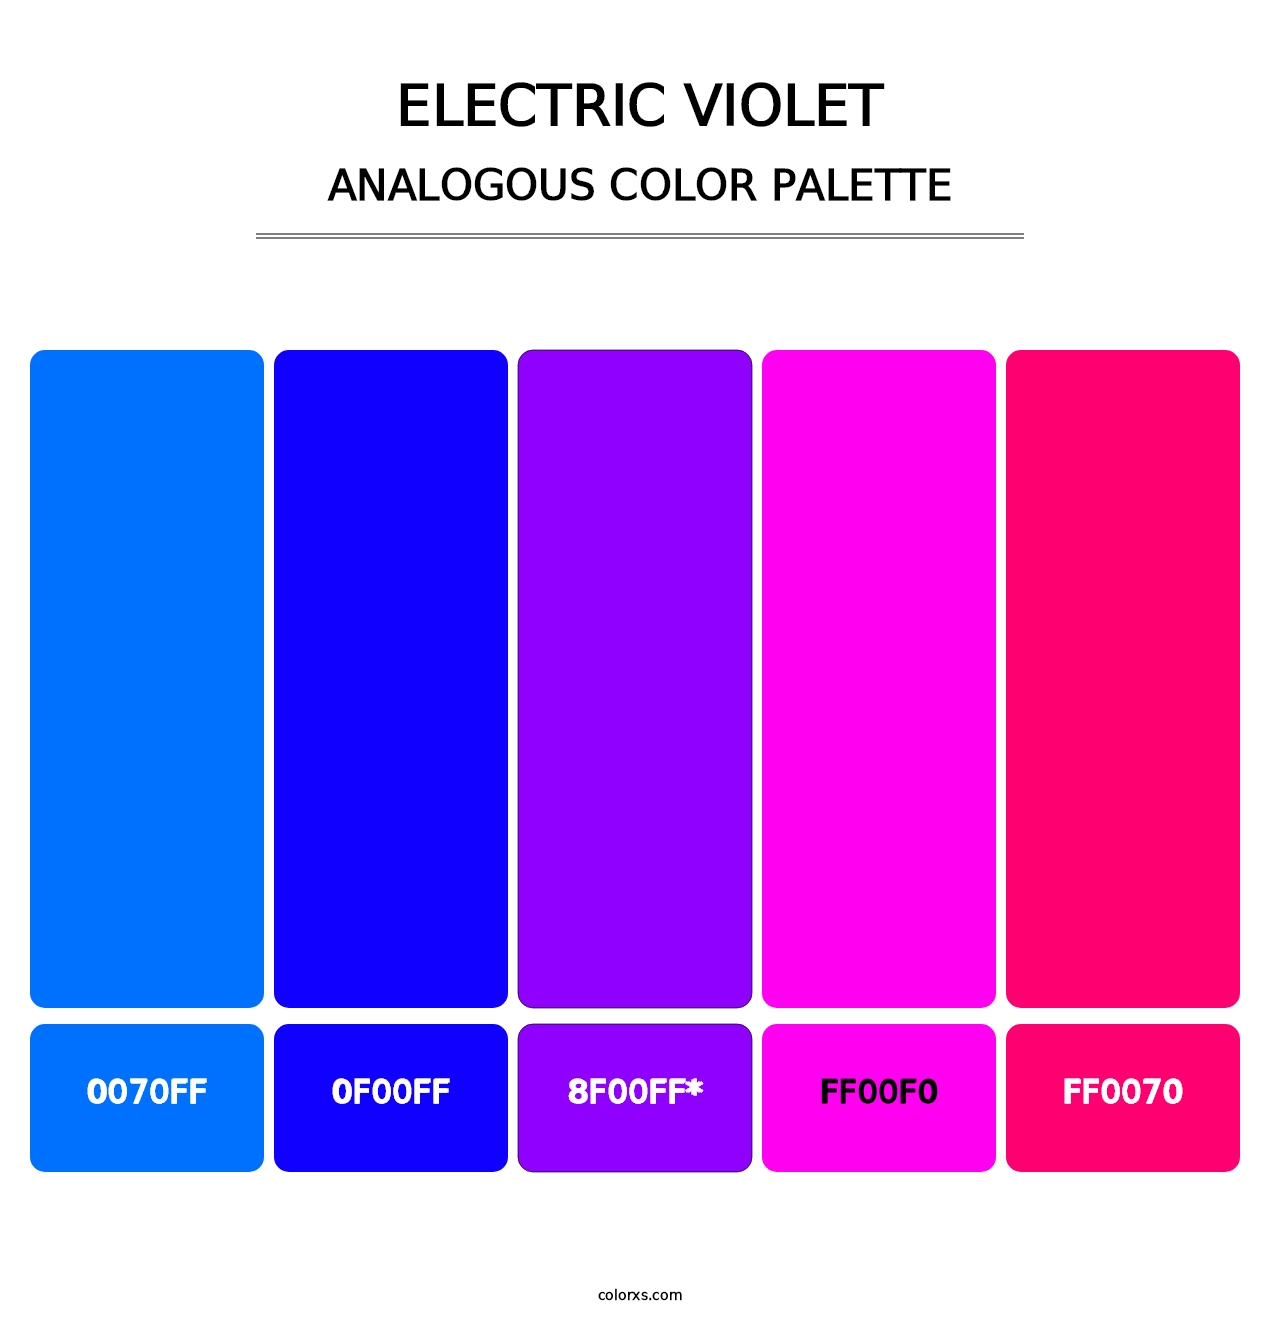 Electric Violet - Analogous Color Palette